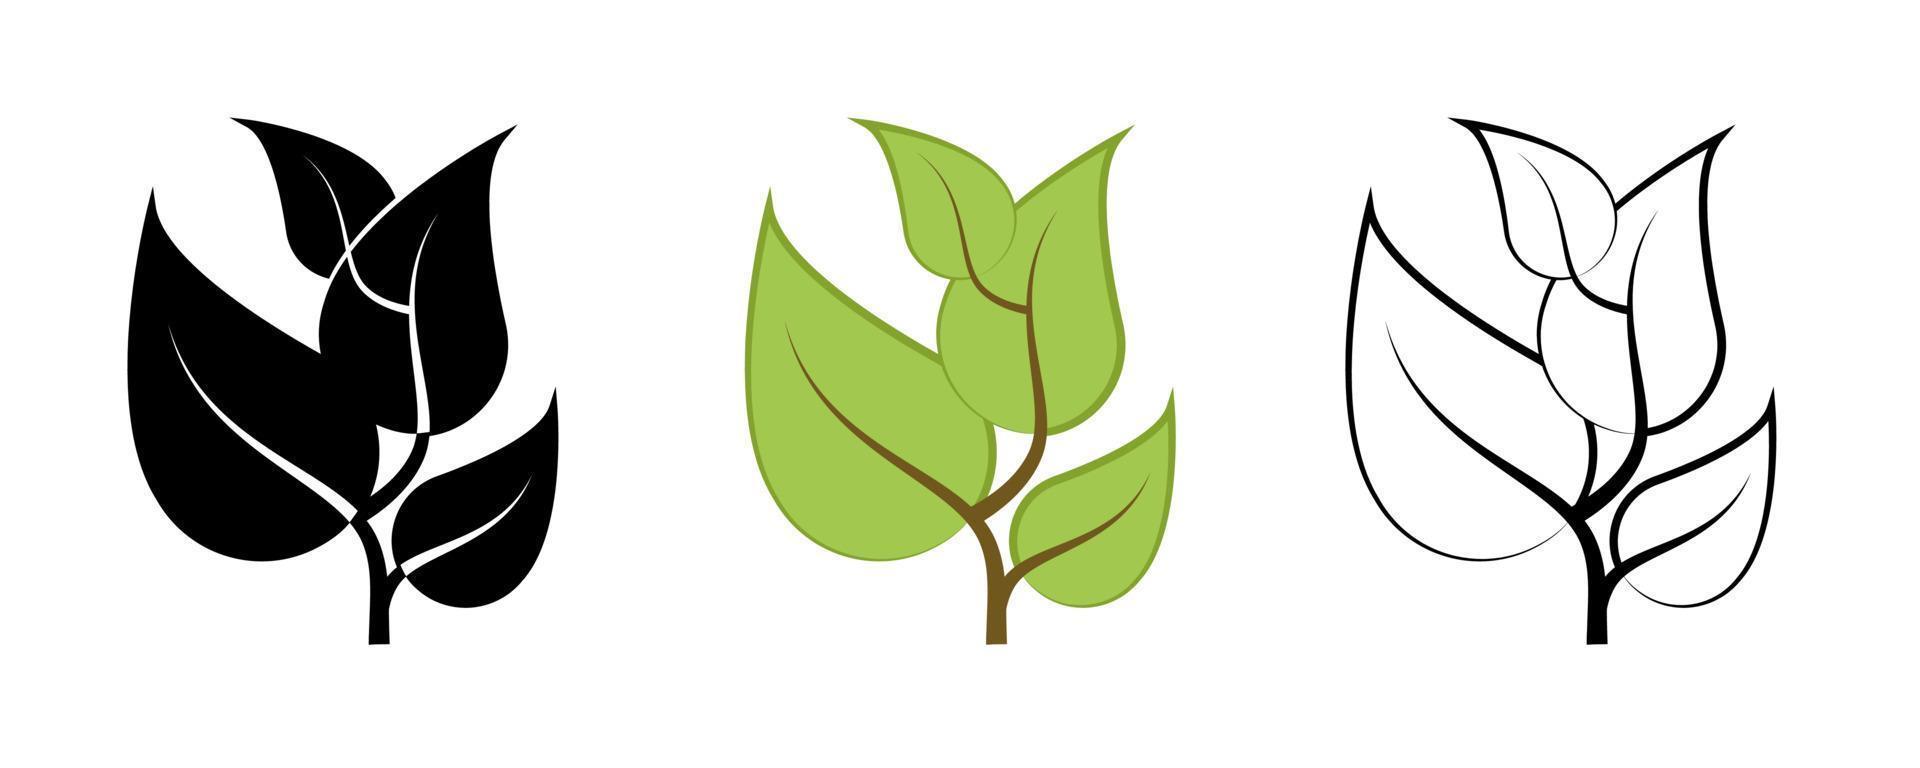 gräs, träd och grenar vektor Ikonuppsättning. innehåller sådana symboler som växt, blad. redigerbar linje. färgad och siluett linjär ikonuppsättning.